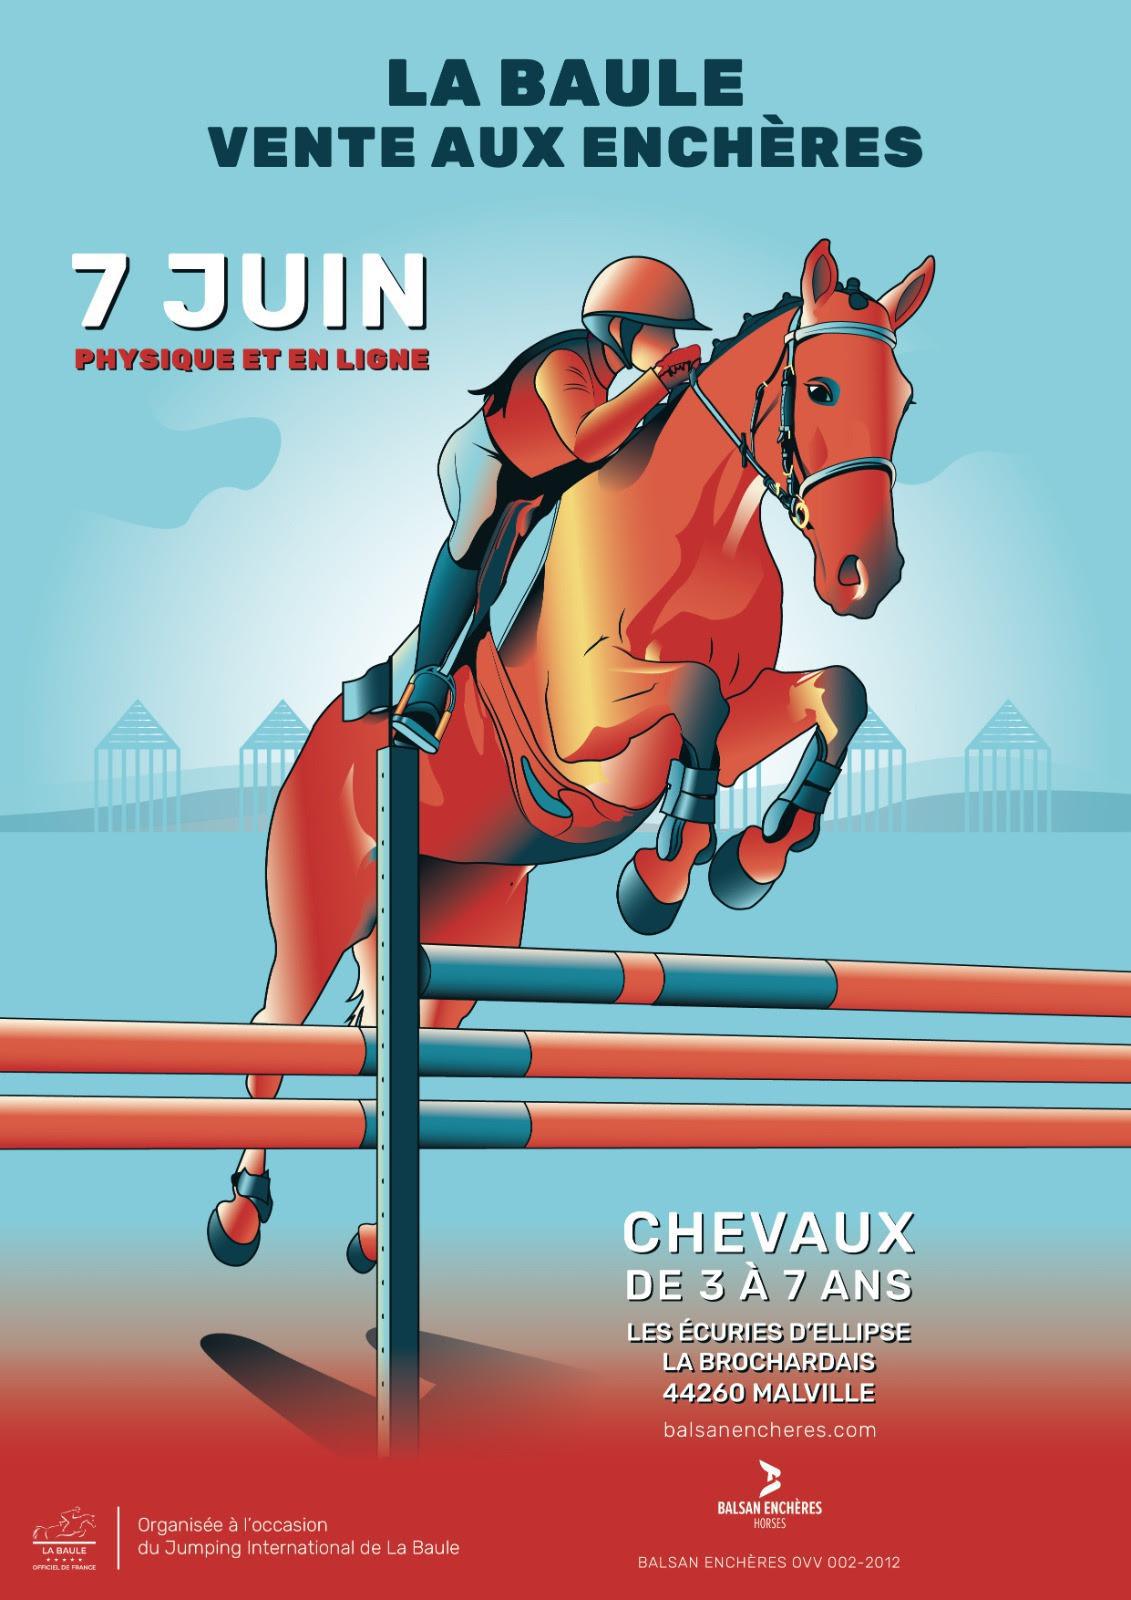 Jumping international de La Baule : Du sport et une vente aux enchères de jeunes chevaux